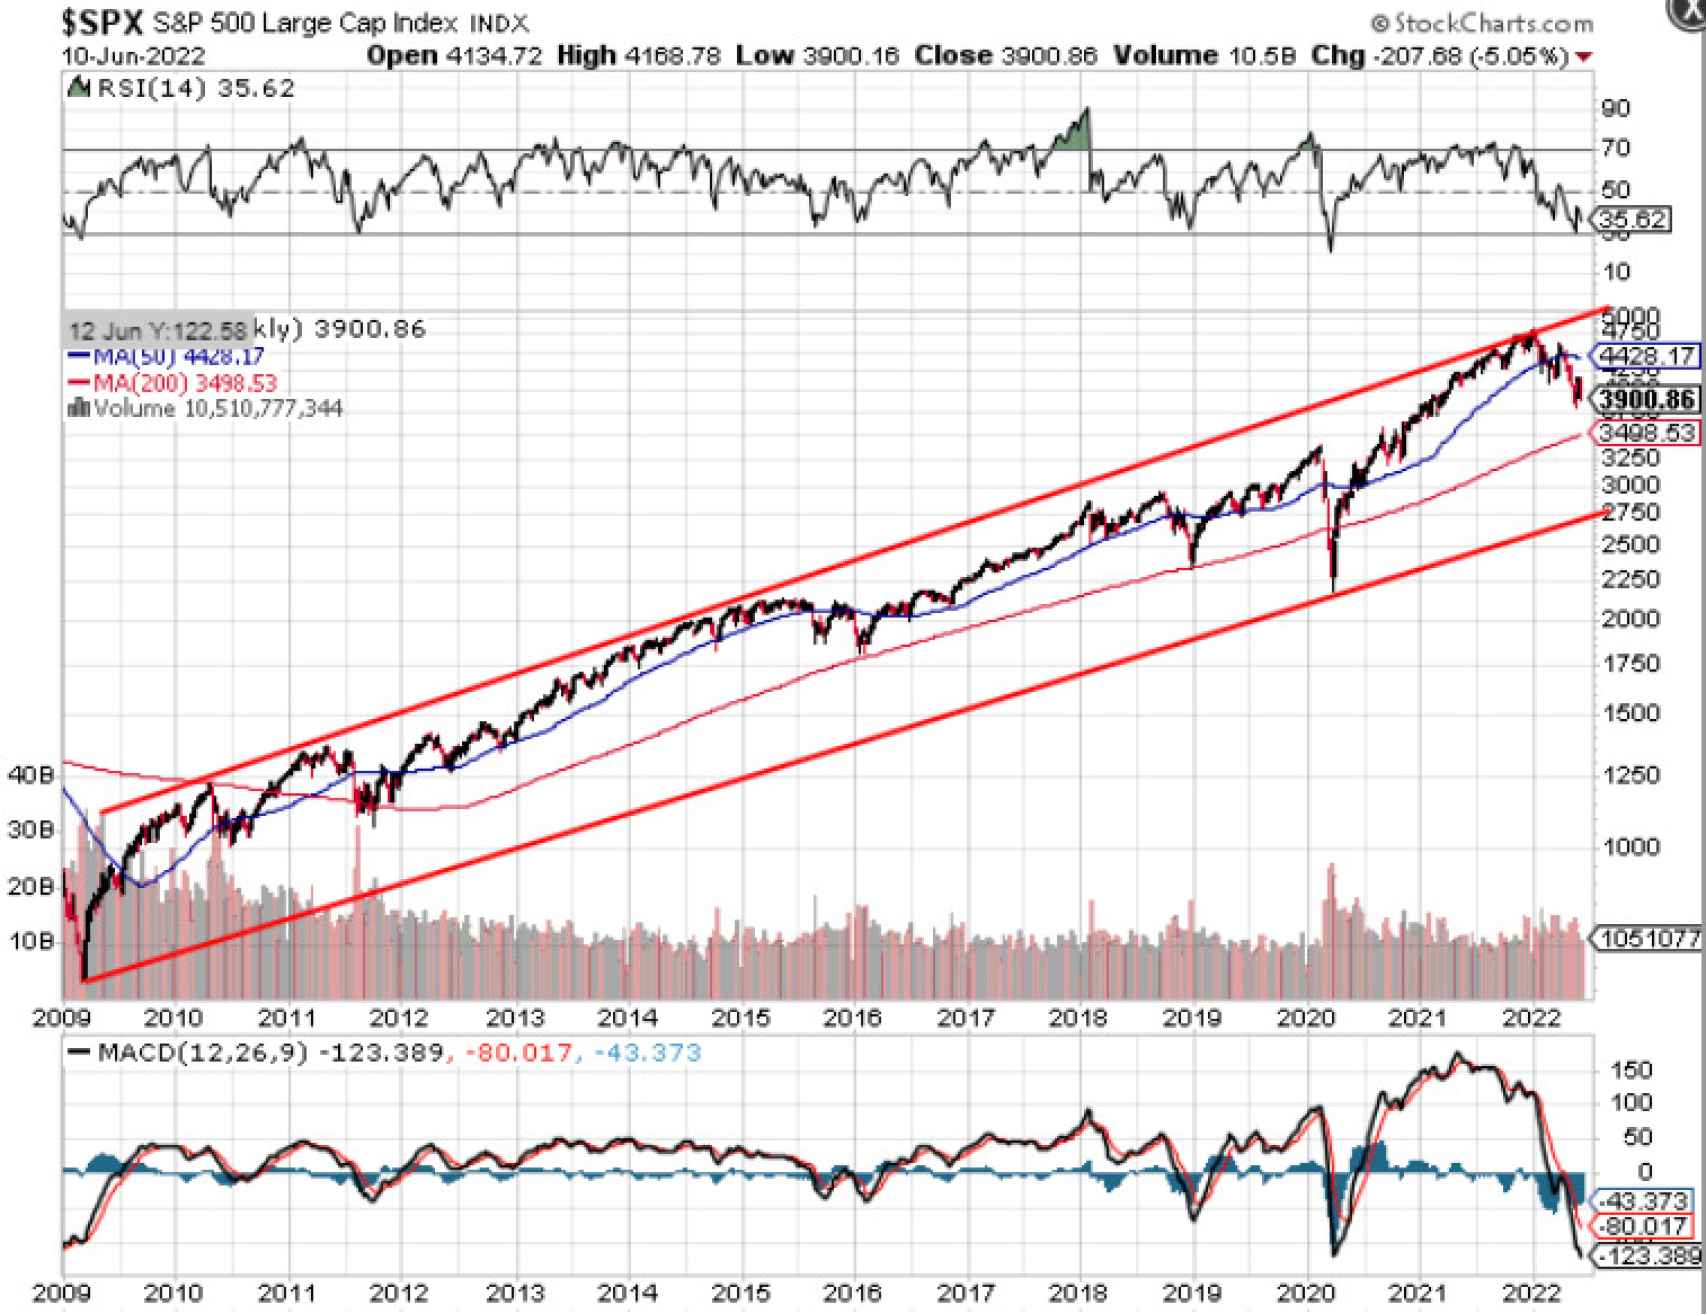 Evolución del S&P 500 desde inicio del mercado alcista en 2009